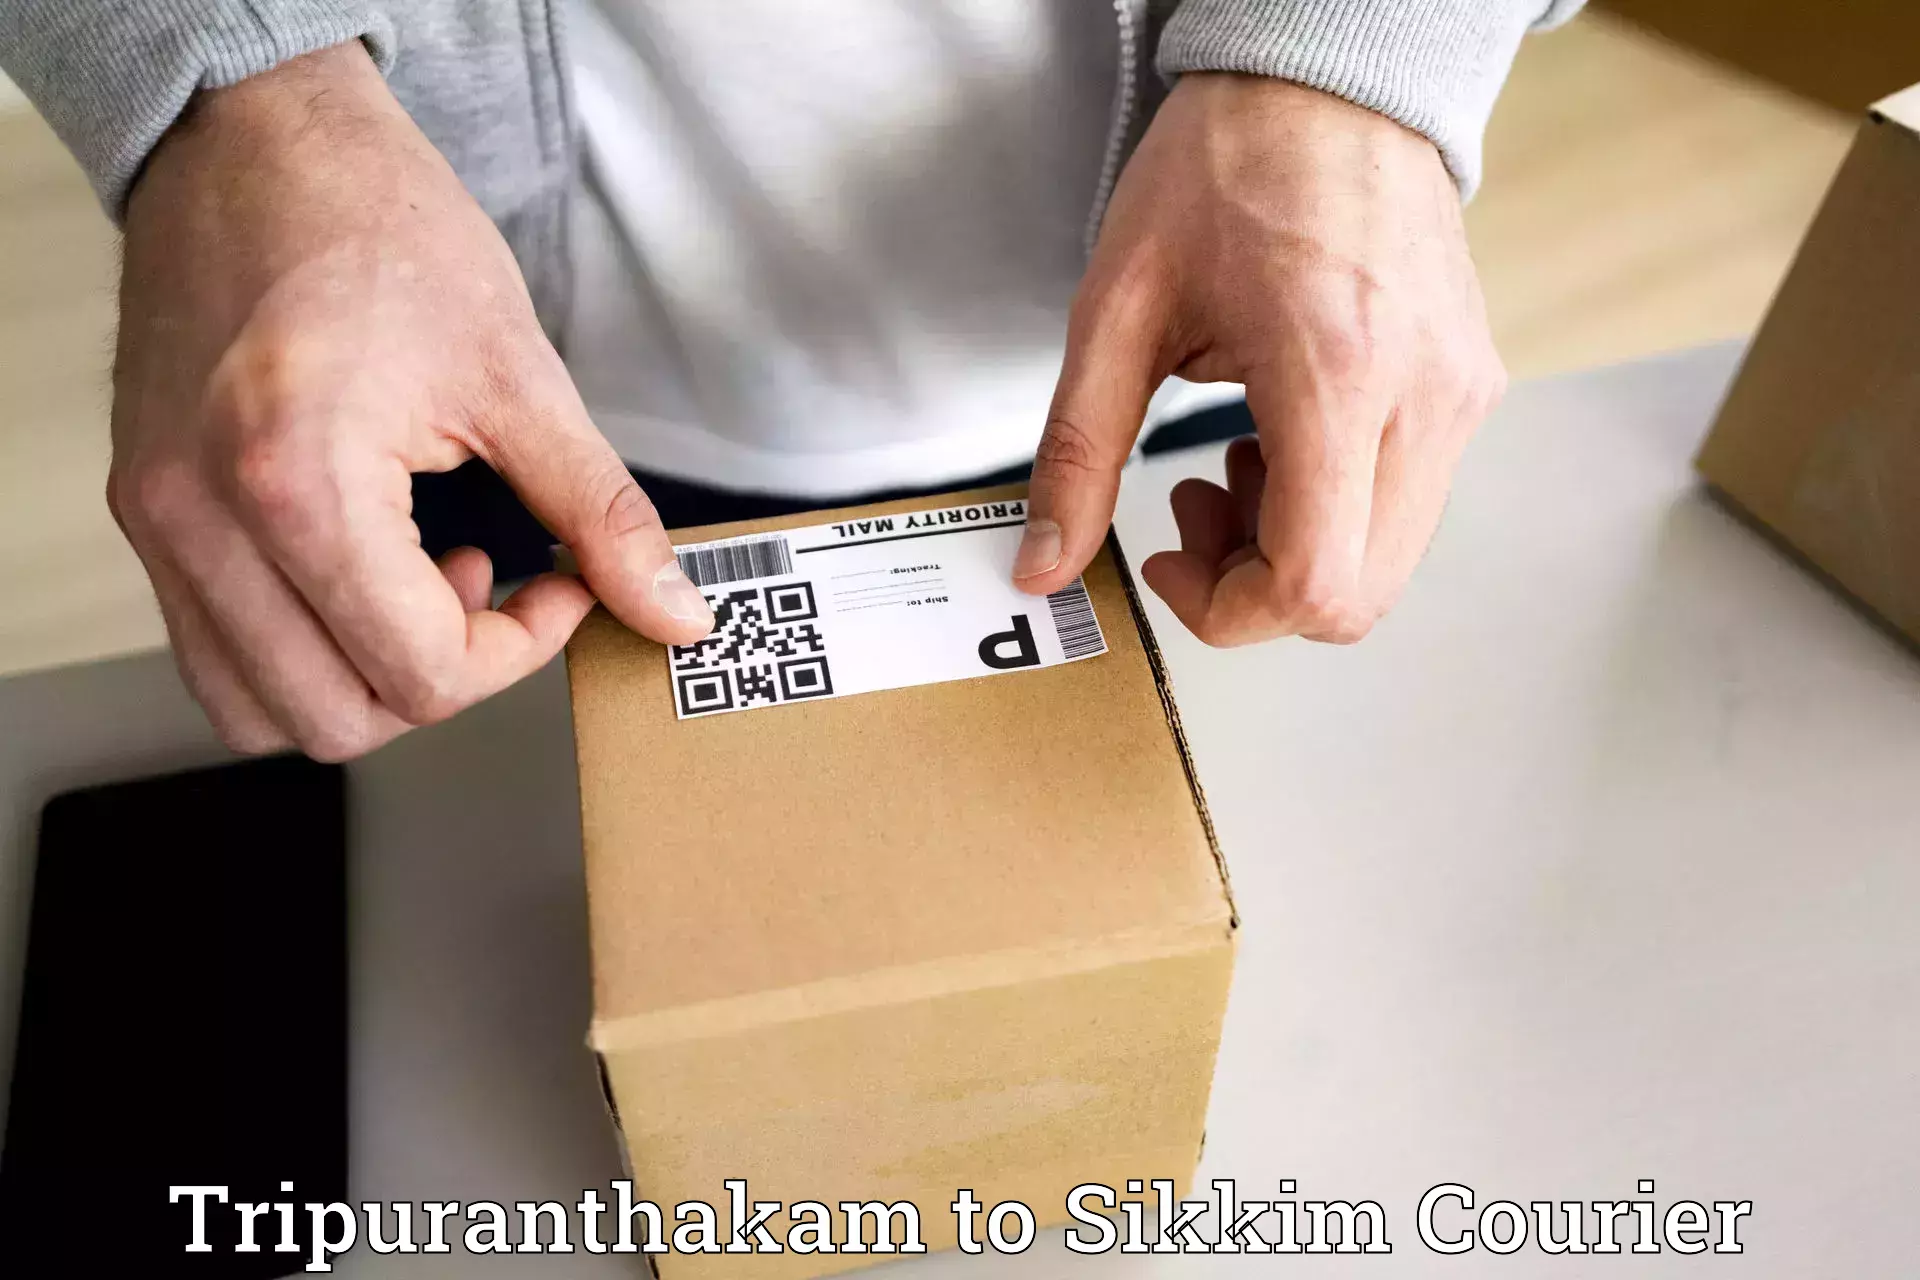 Easy return solutions Tripuranthakam to Singtam